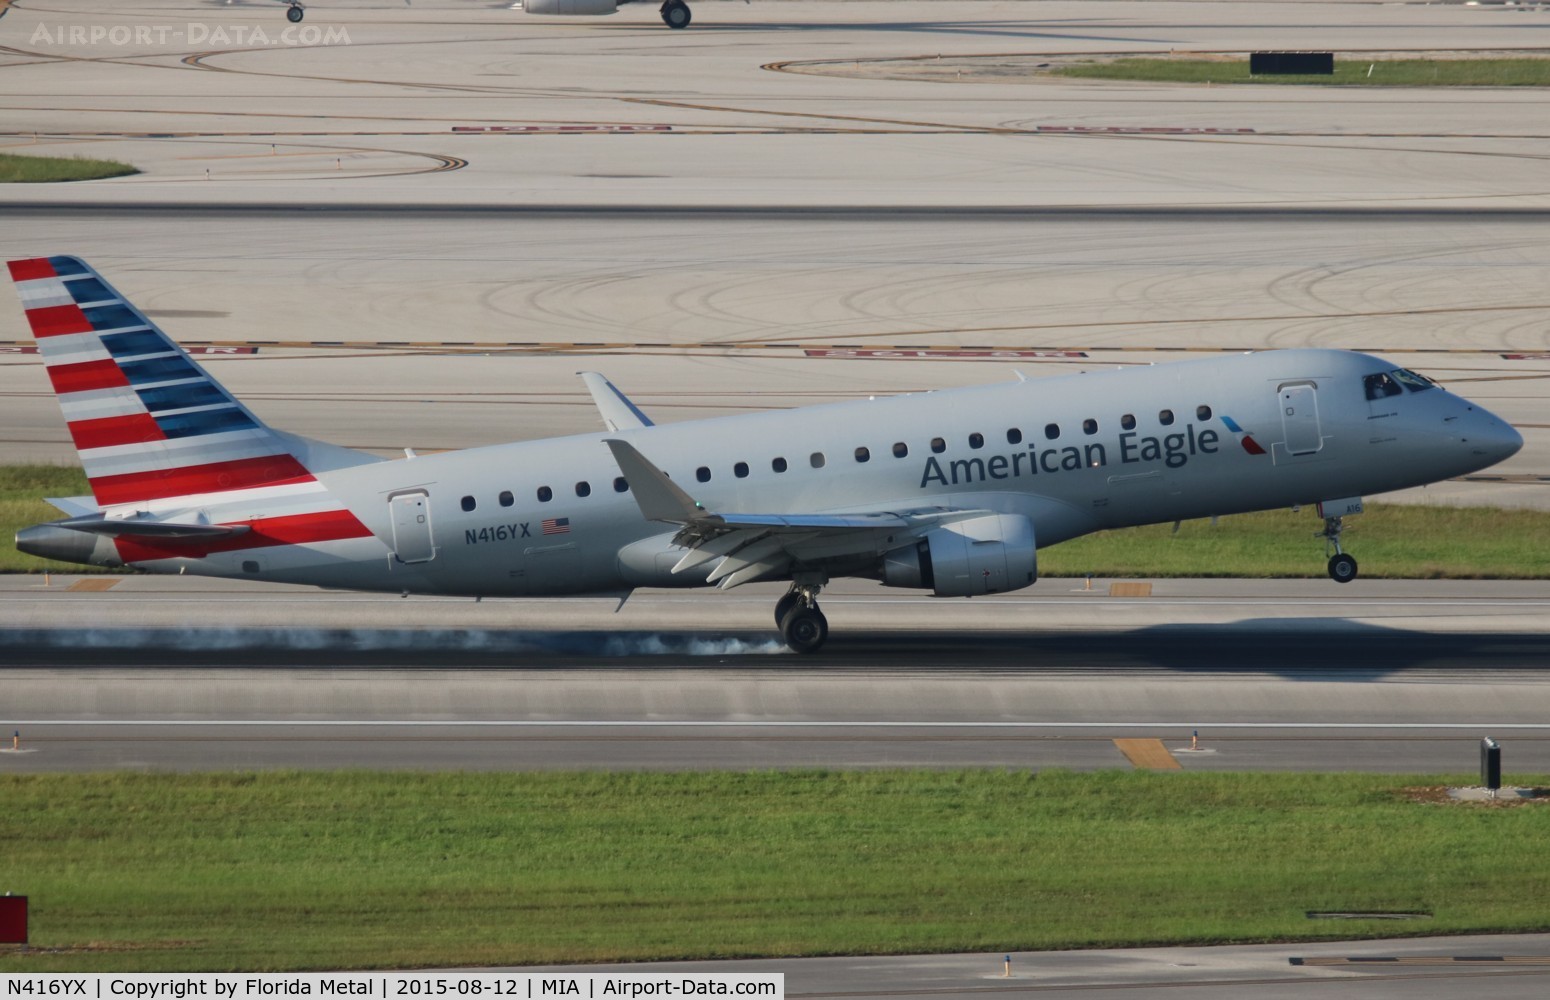 N416YX, 2013 Embraer 175LR (ERJ-170-200LR) C/N 17000381, American Eagle